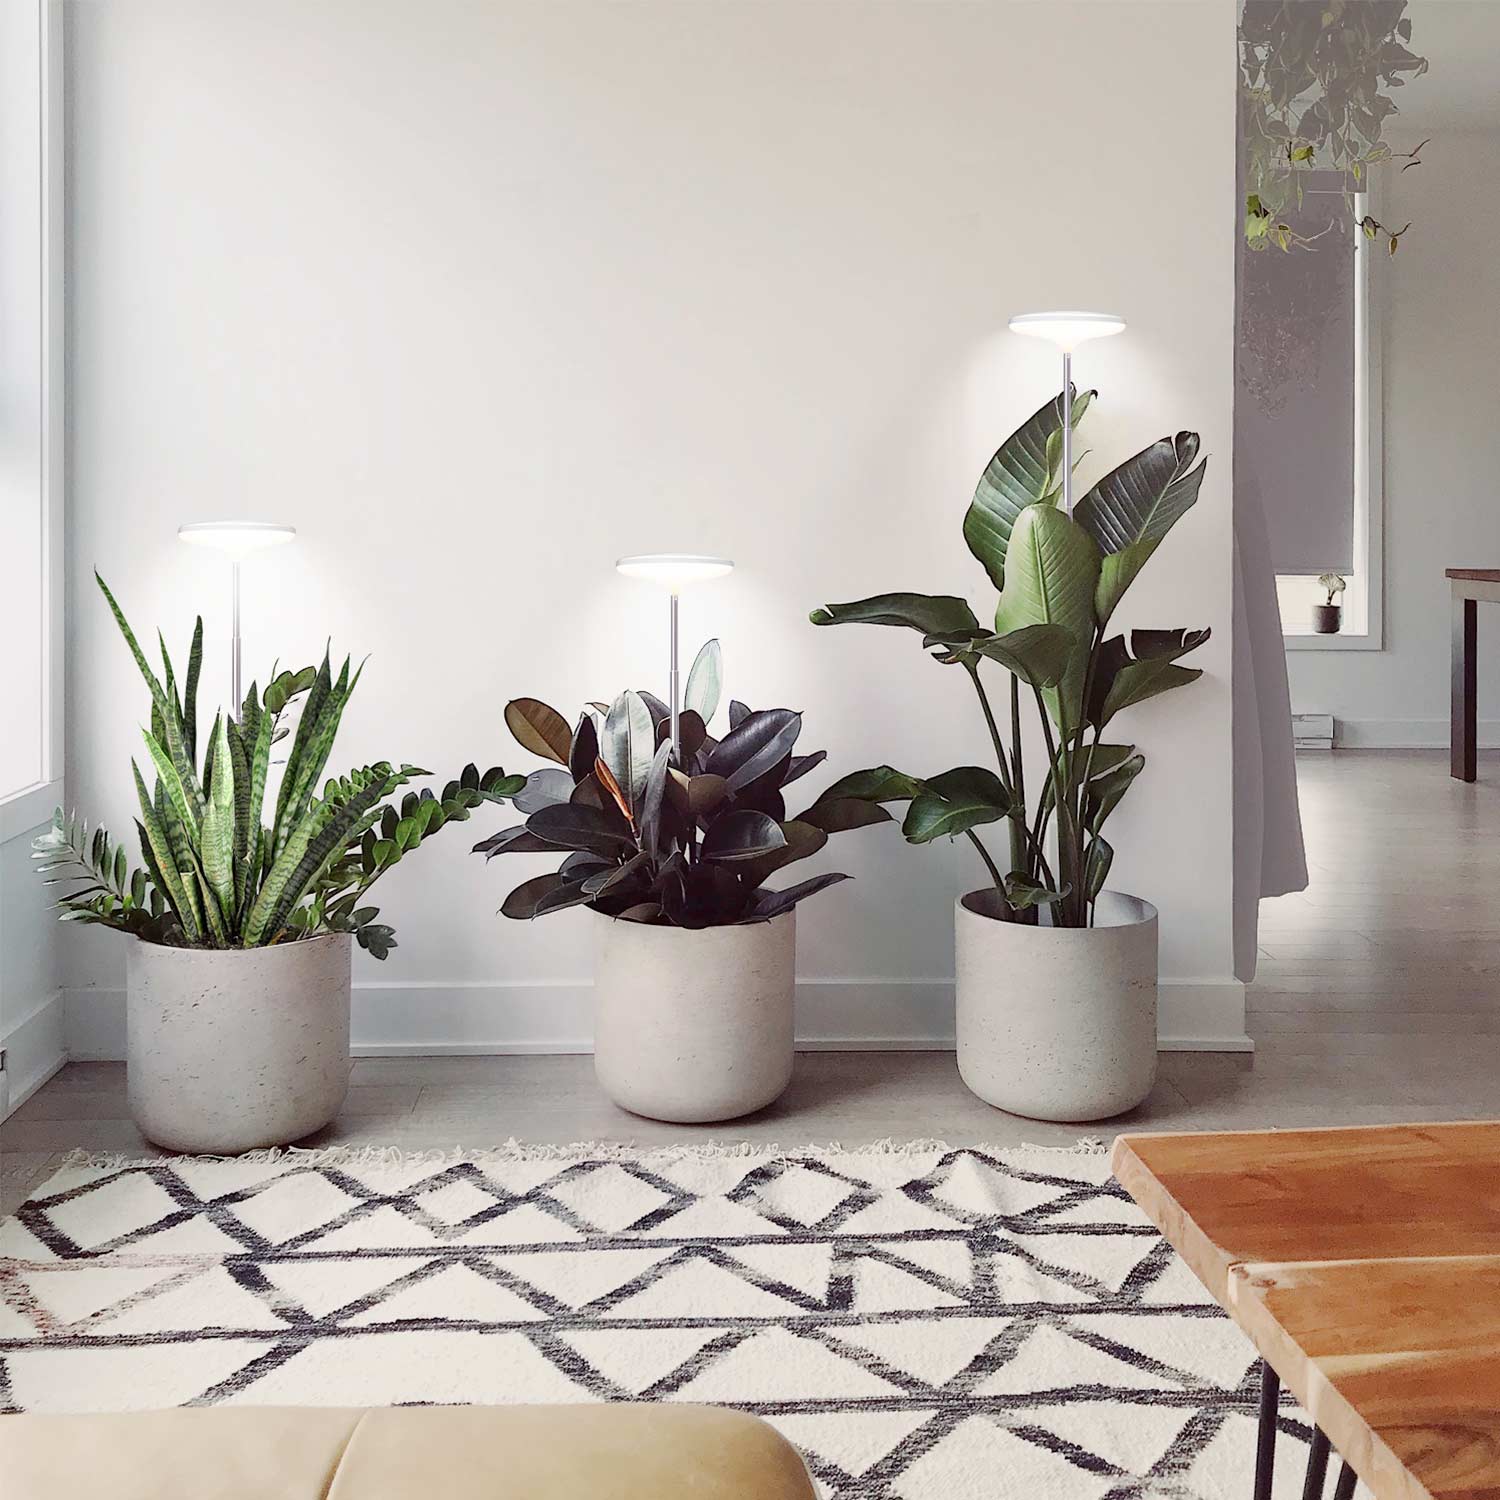 TG004 Endoma Smart Plant Grow Light Lampo Ĝardeno Grow Lights Ornamaj Planto Lumoj